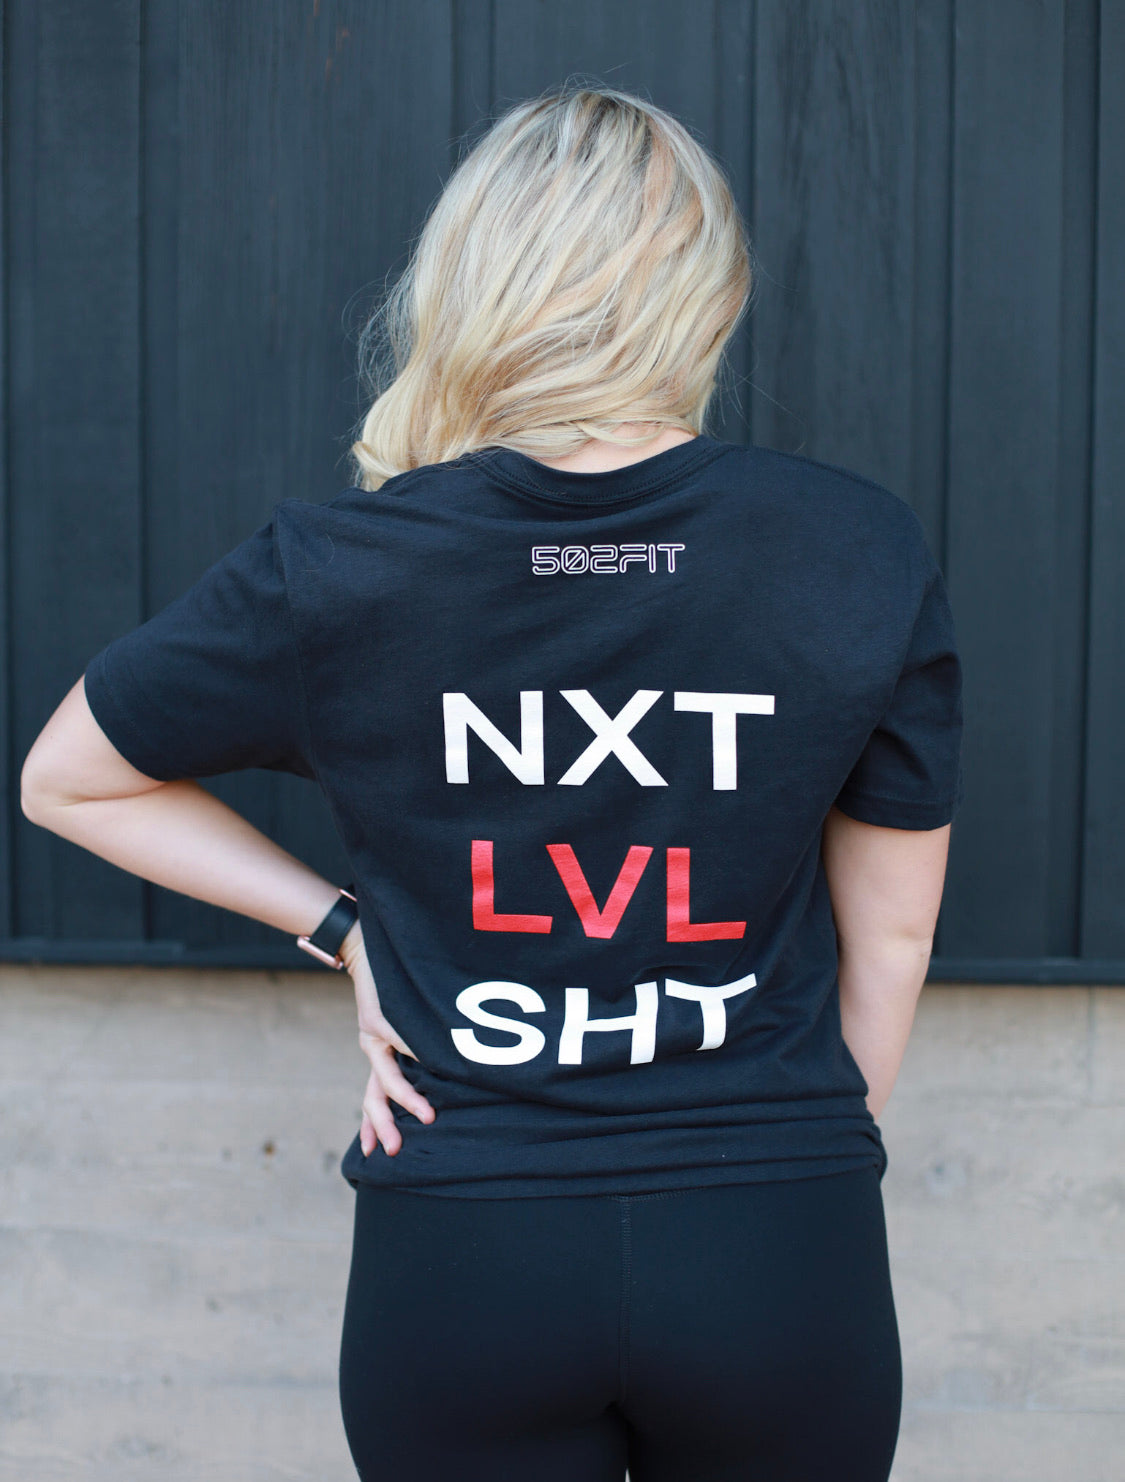 NXT LVL SHT – 502FIT